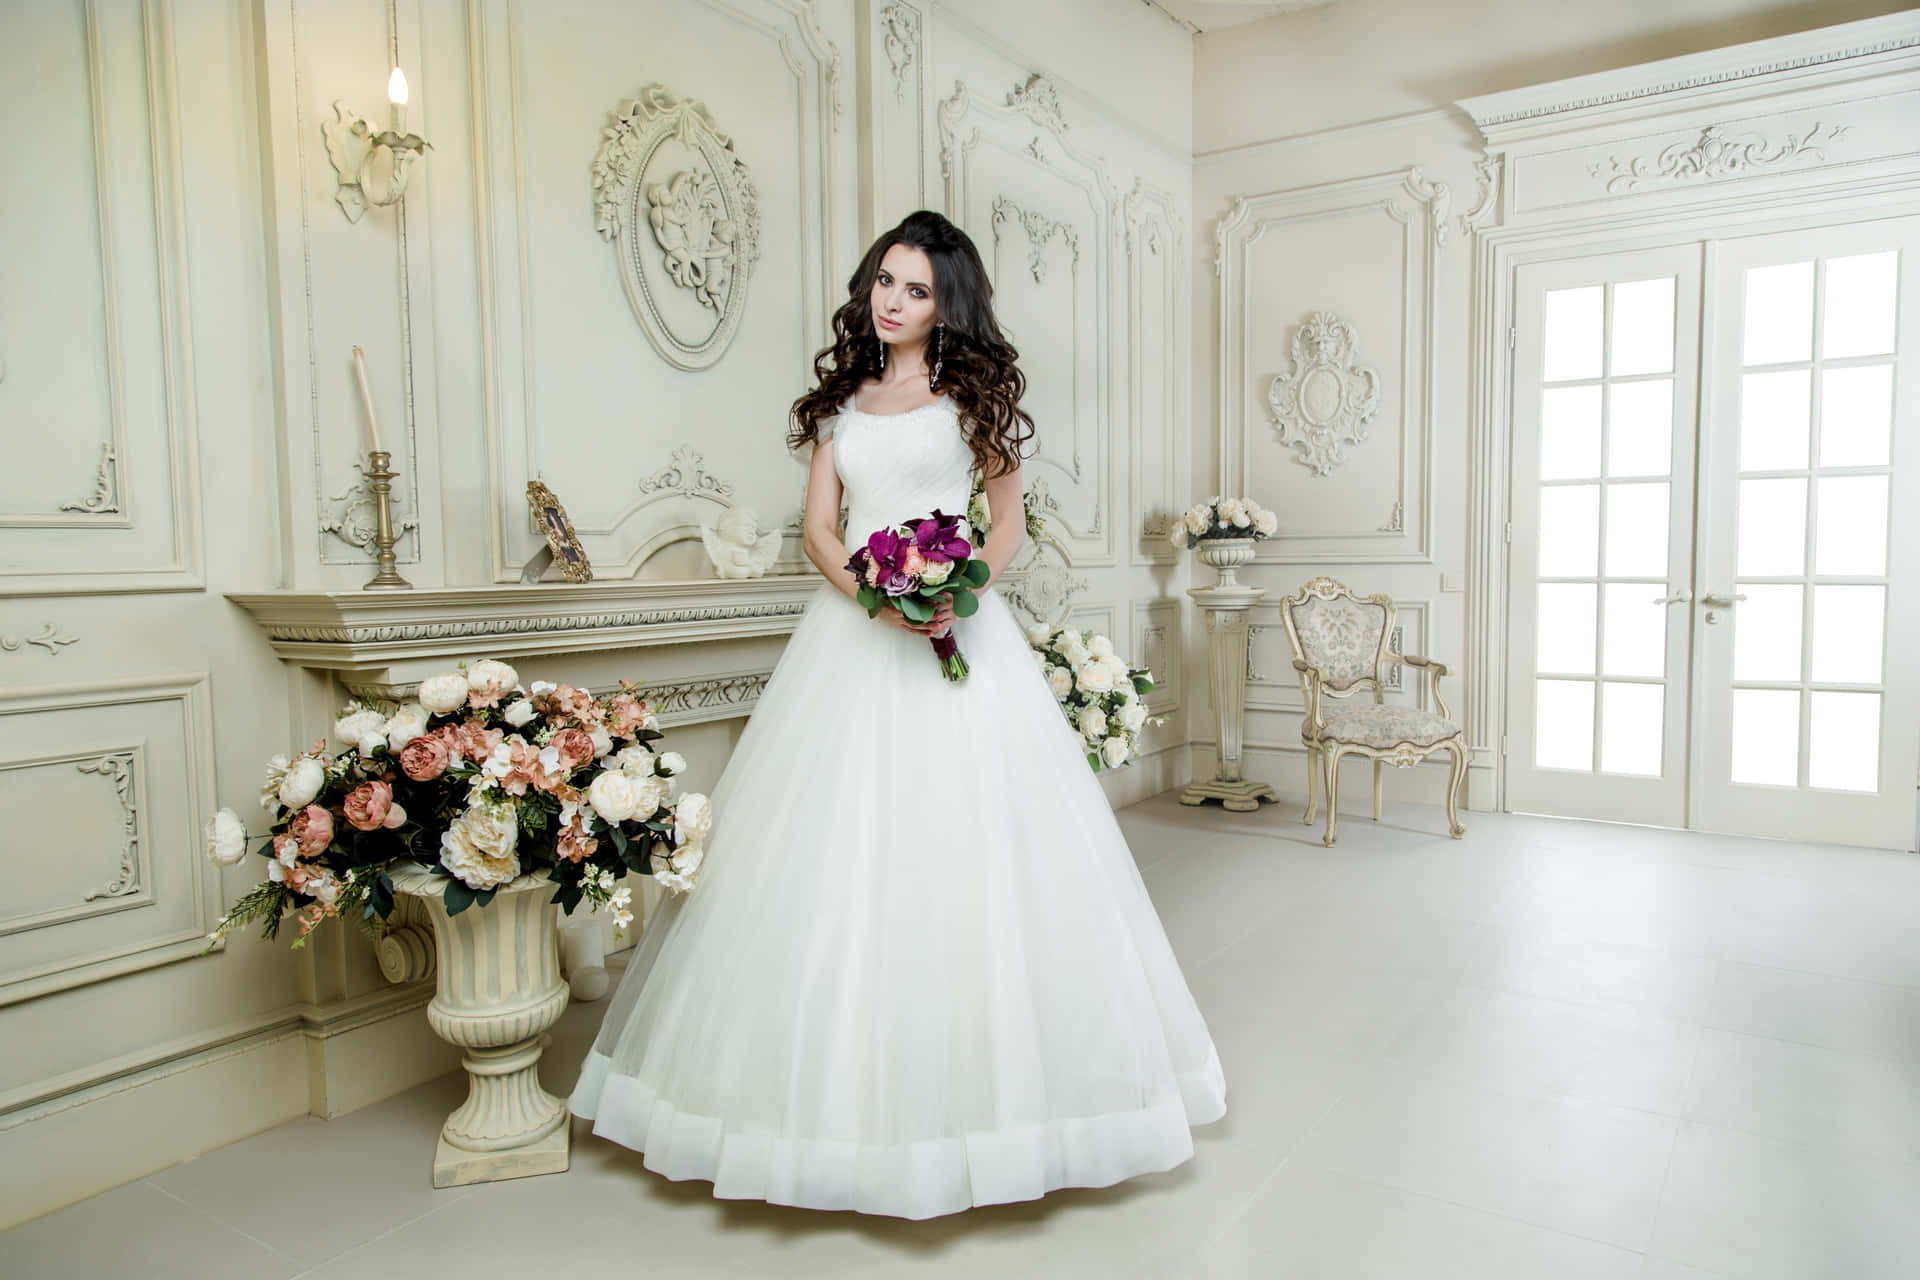 Elegant Bride in a Beautiful Wedding Gown